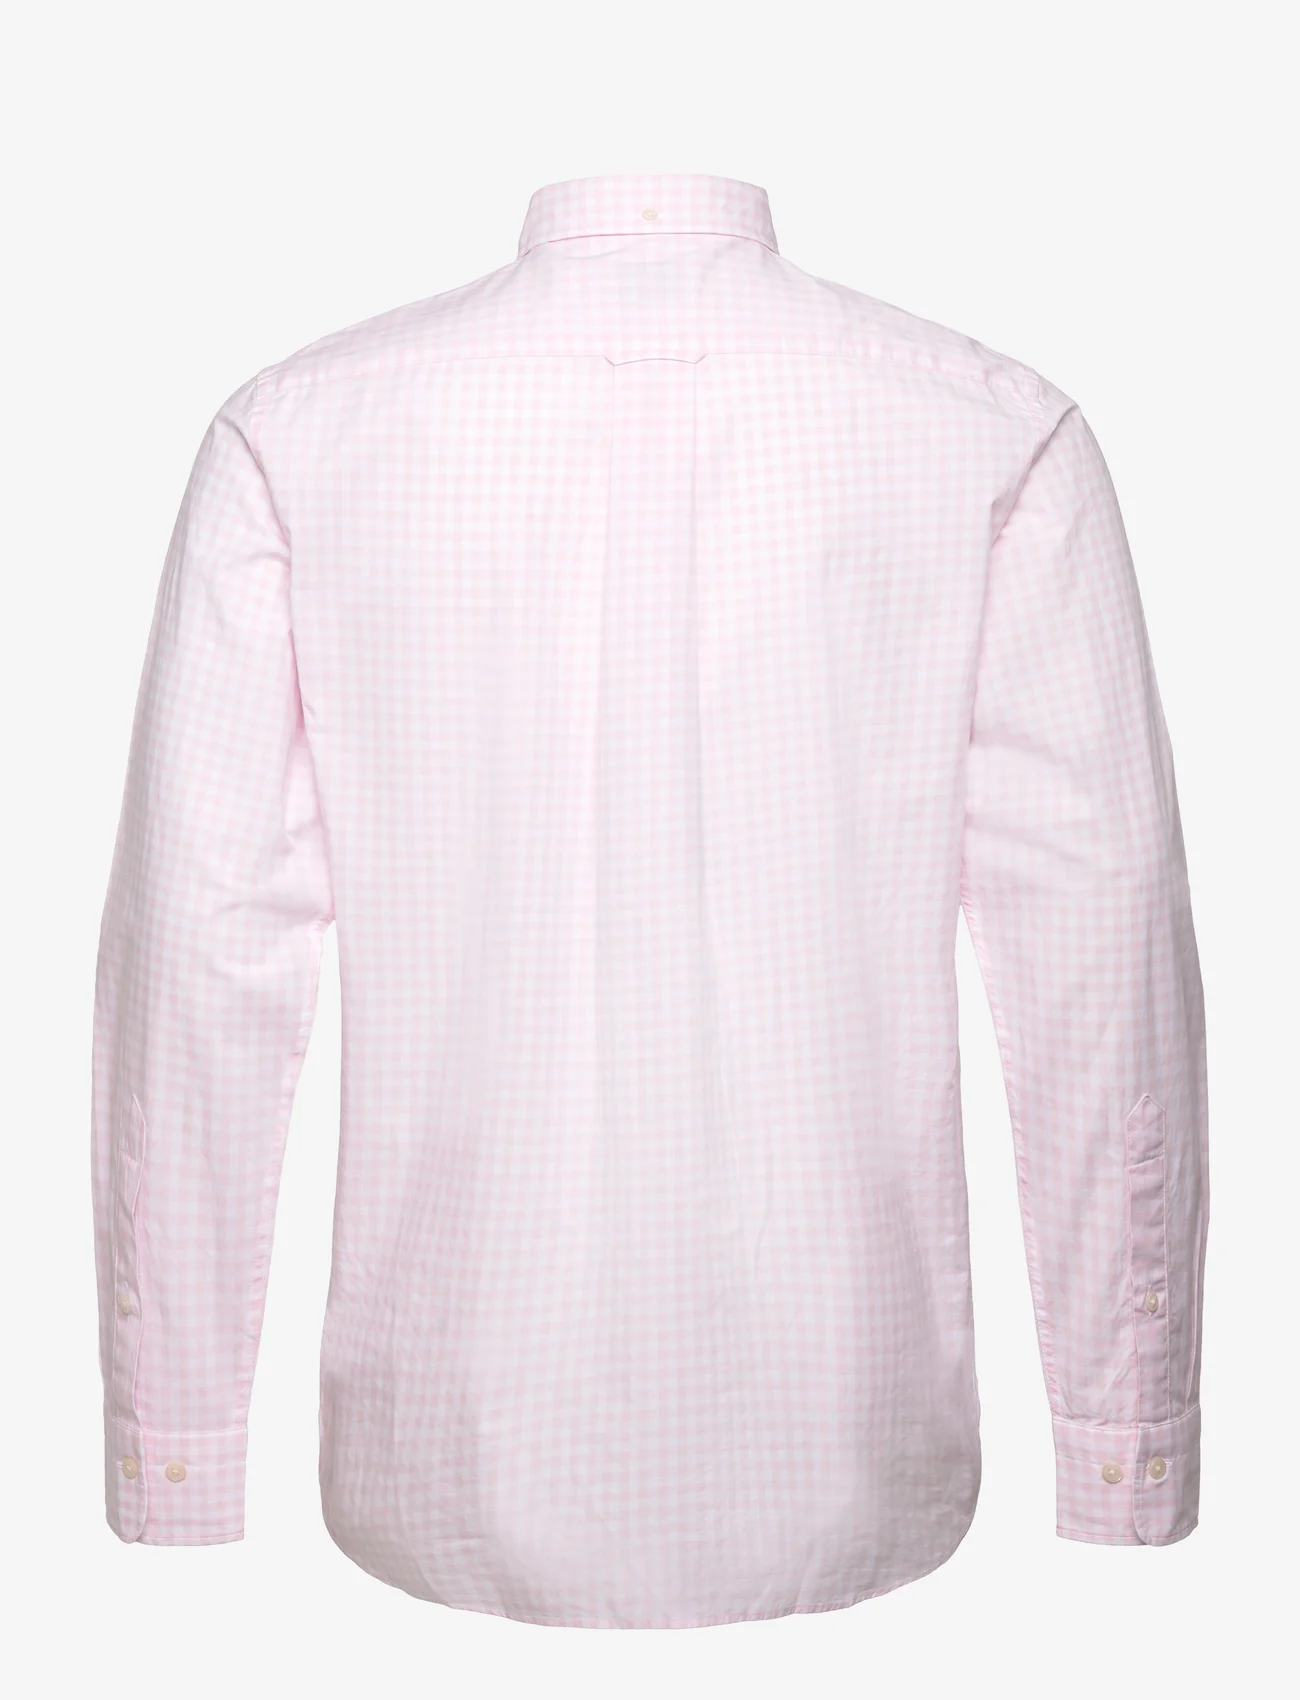 GANT - REG CLASSIC POPLIN GINGHAM SHIRT - ternede skjorter - light pink - 1